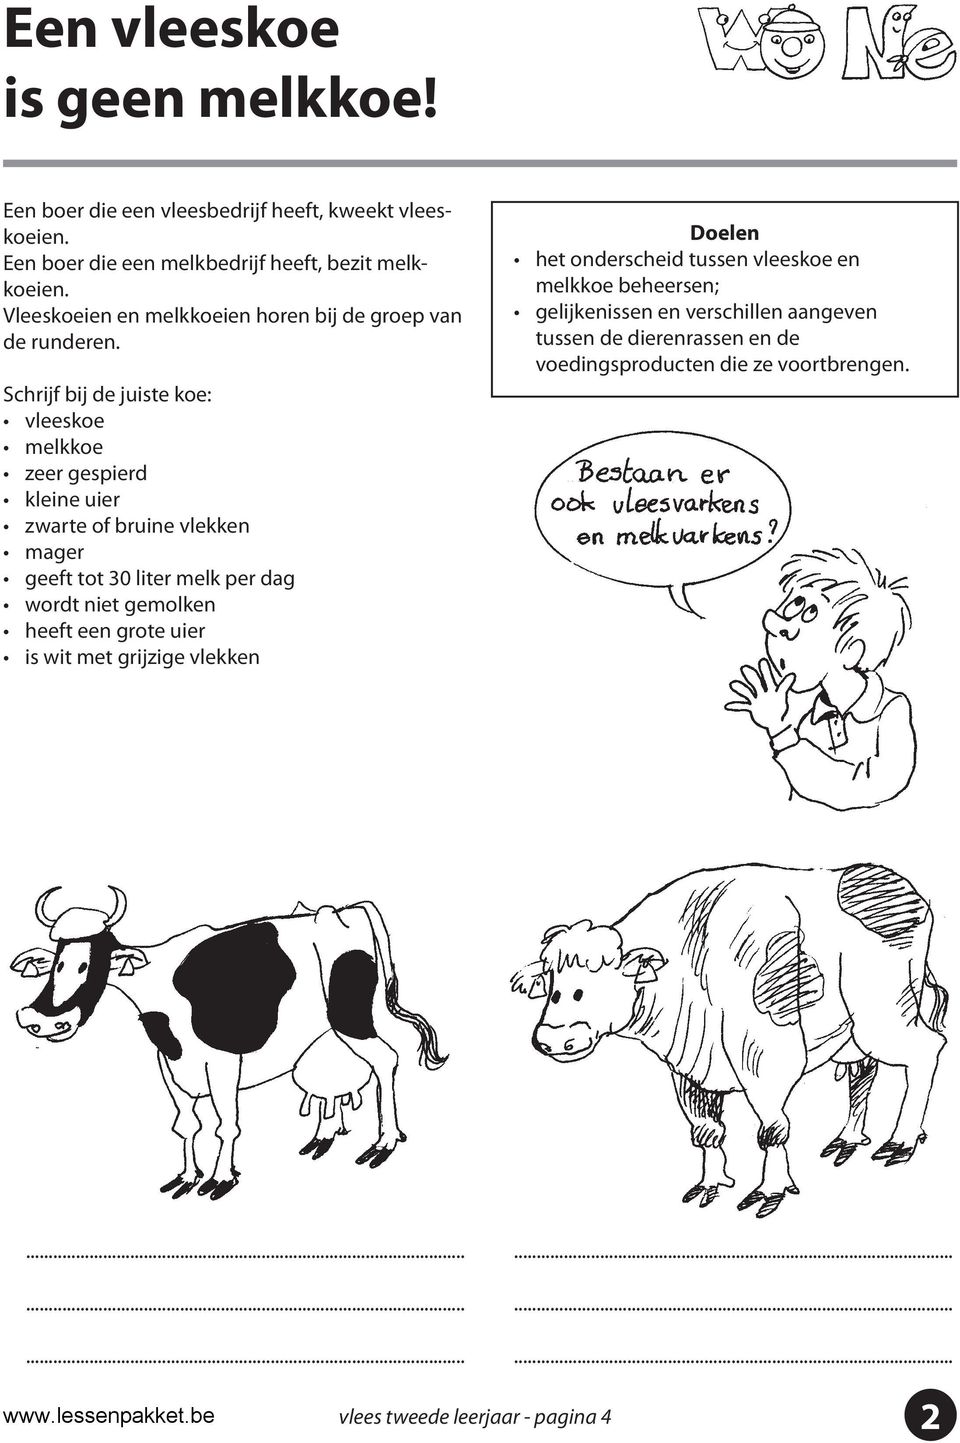 Schrijf bij de juiste koe: vleeskoe melkkoe zeer gespierd kleine uier zwarte of bruine vlekken mager geeft tot 30 liter melk per dag wordt niet